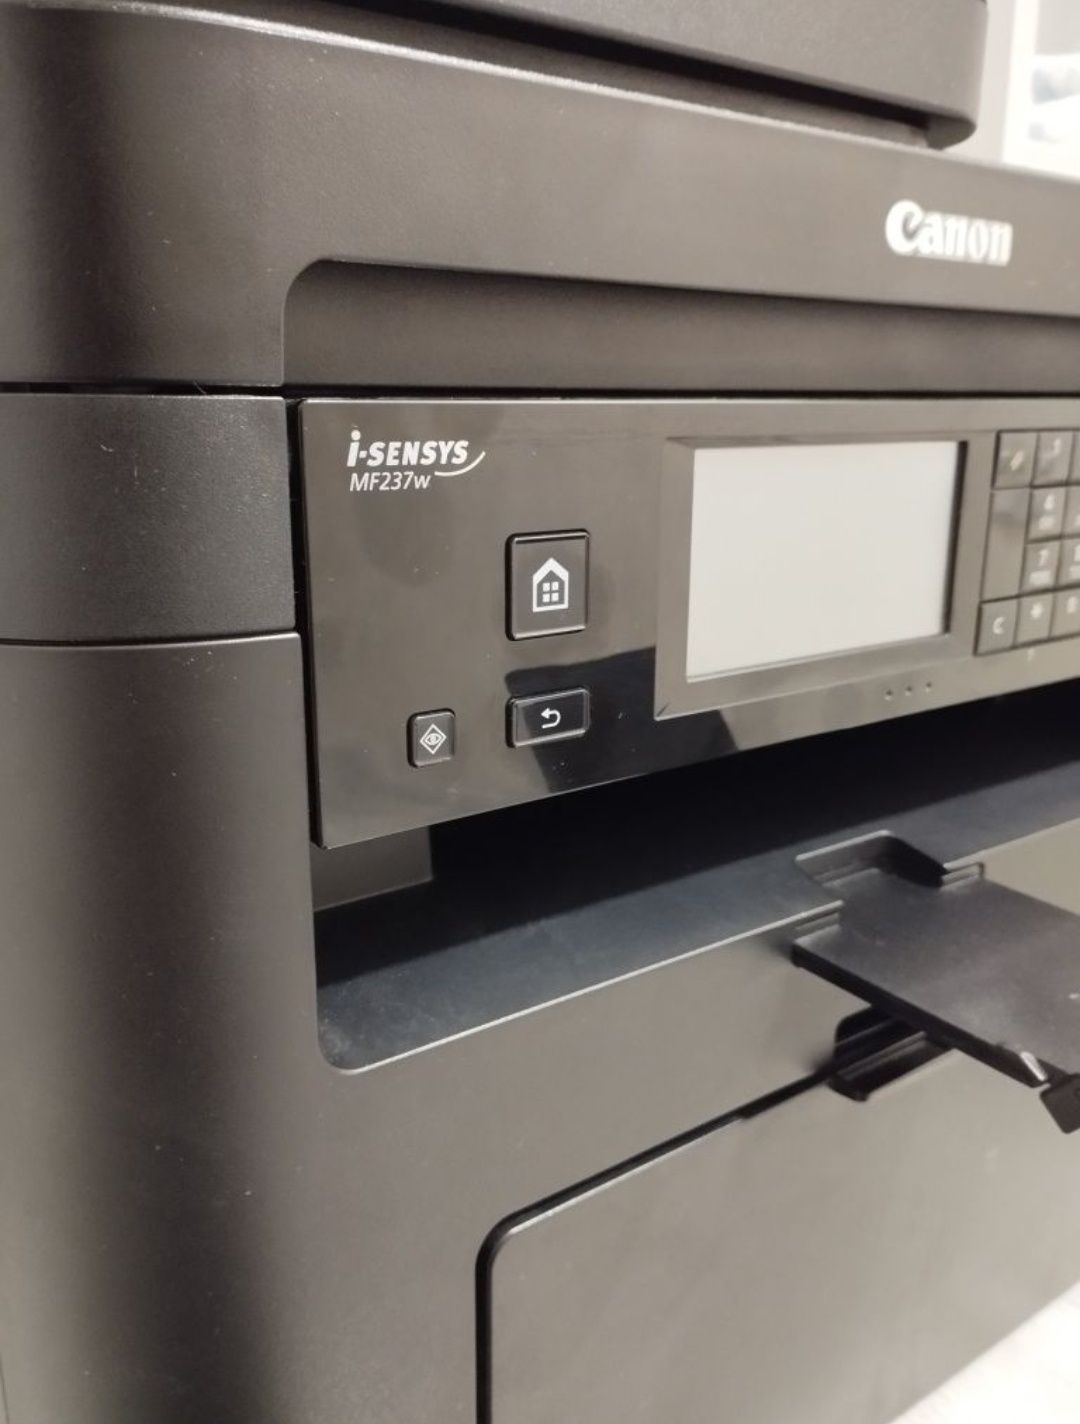 Printer CANON MF237w